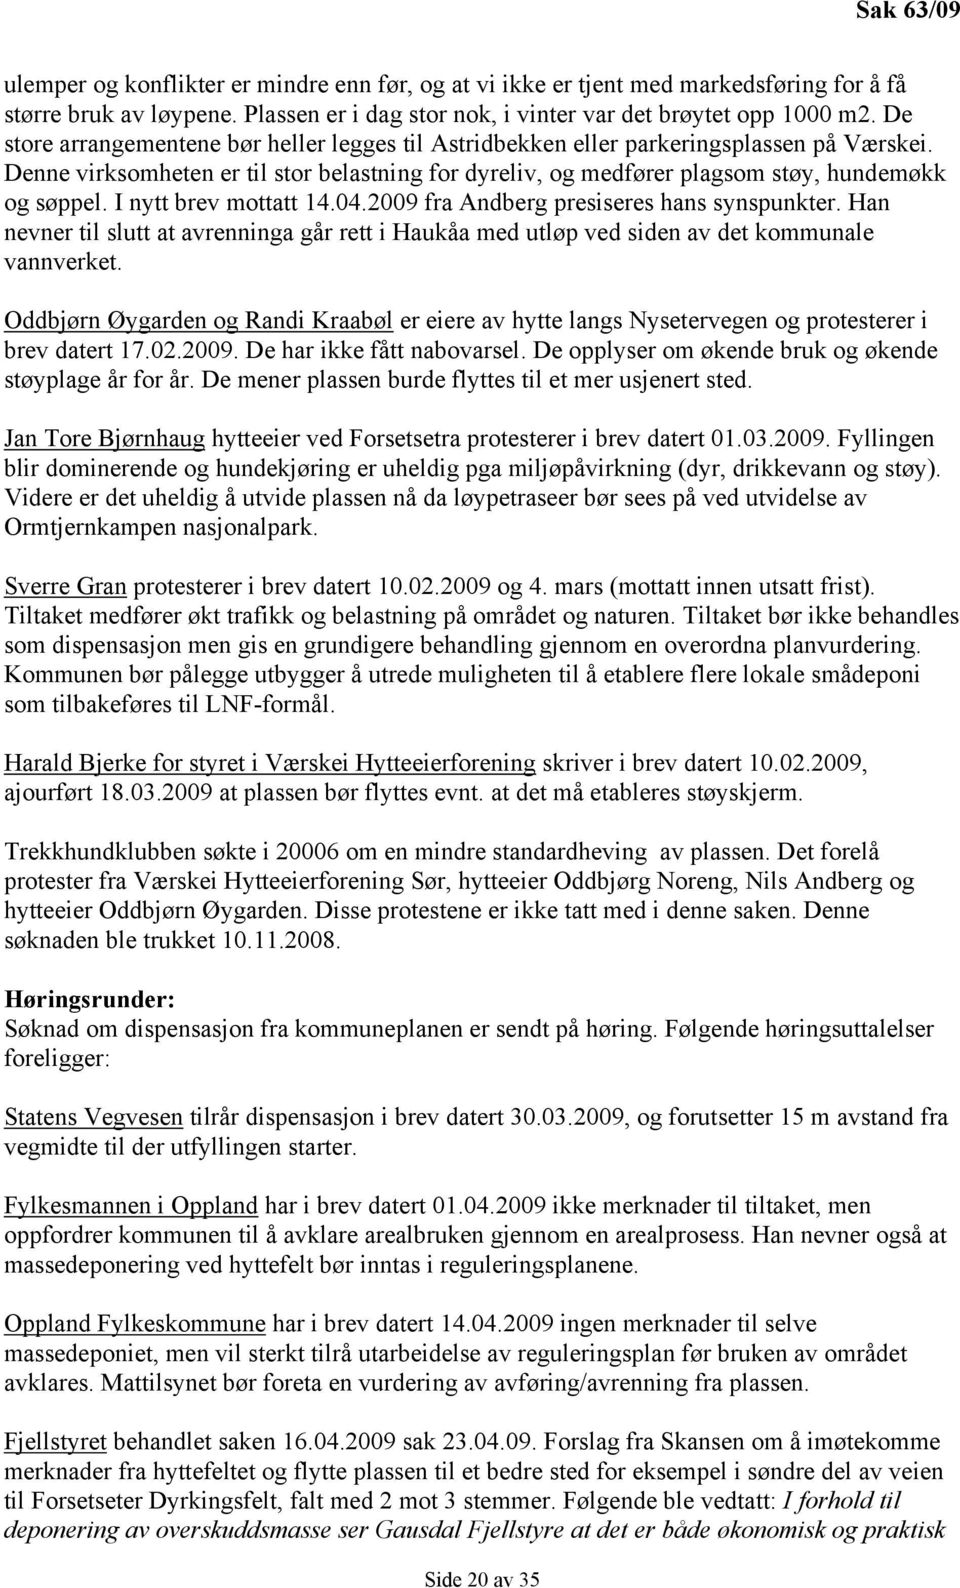 I nytt brev mottatt 14.04.2009 fra Andberg presiseres hans synspunkter. Han nevner til slutt at avrenninga går rett i Haukåa med utløp ved siden av det kommunale vannverket.